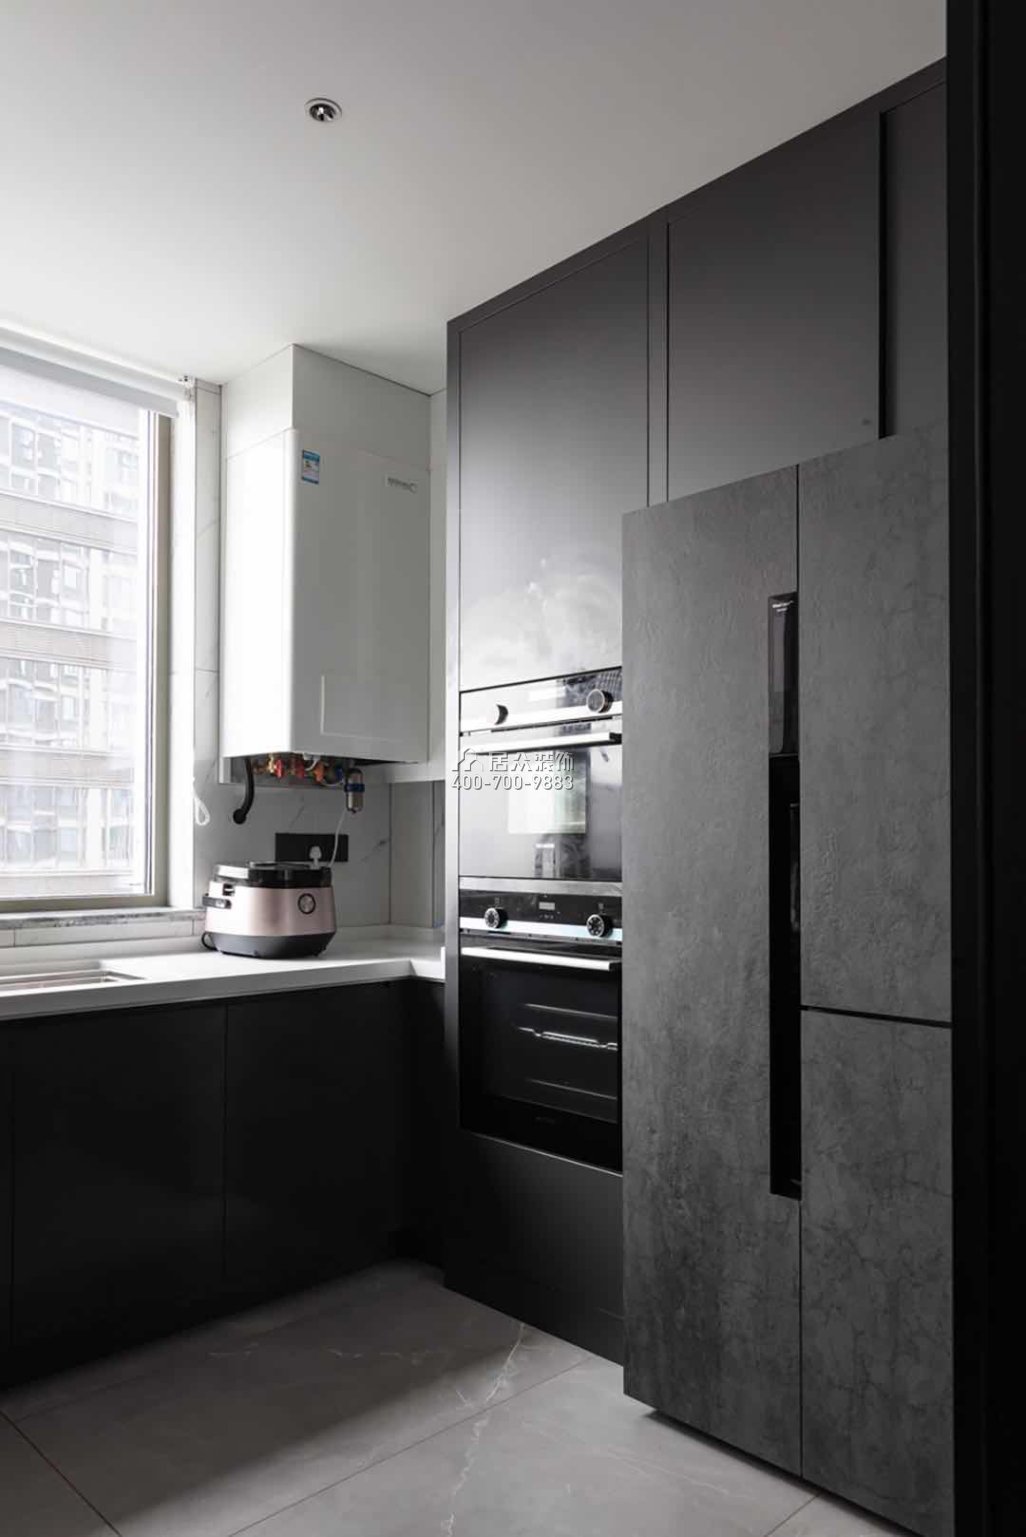 建發央璽186平方米現代簡約風格平層戶型廚房裝修效果圖